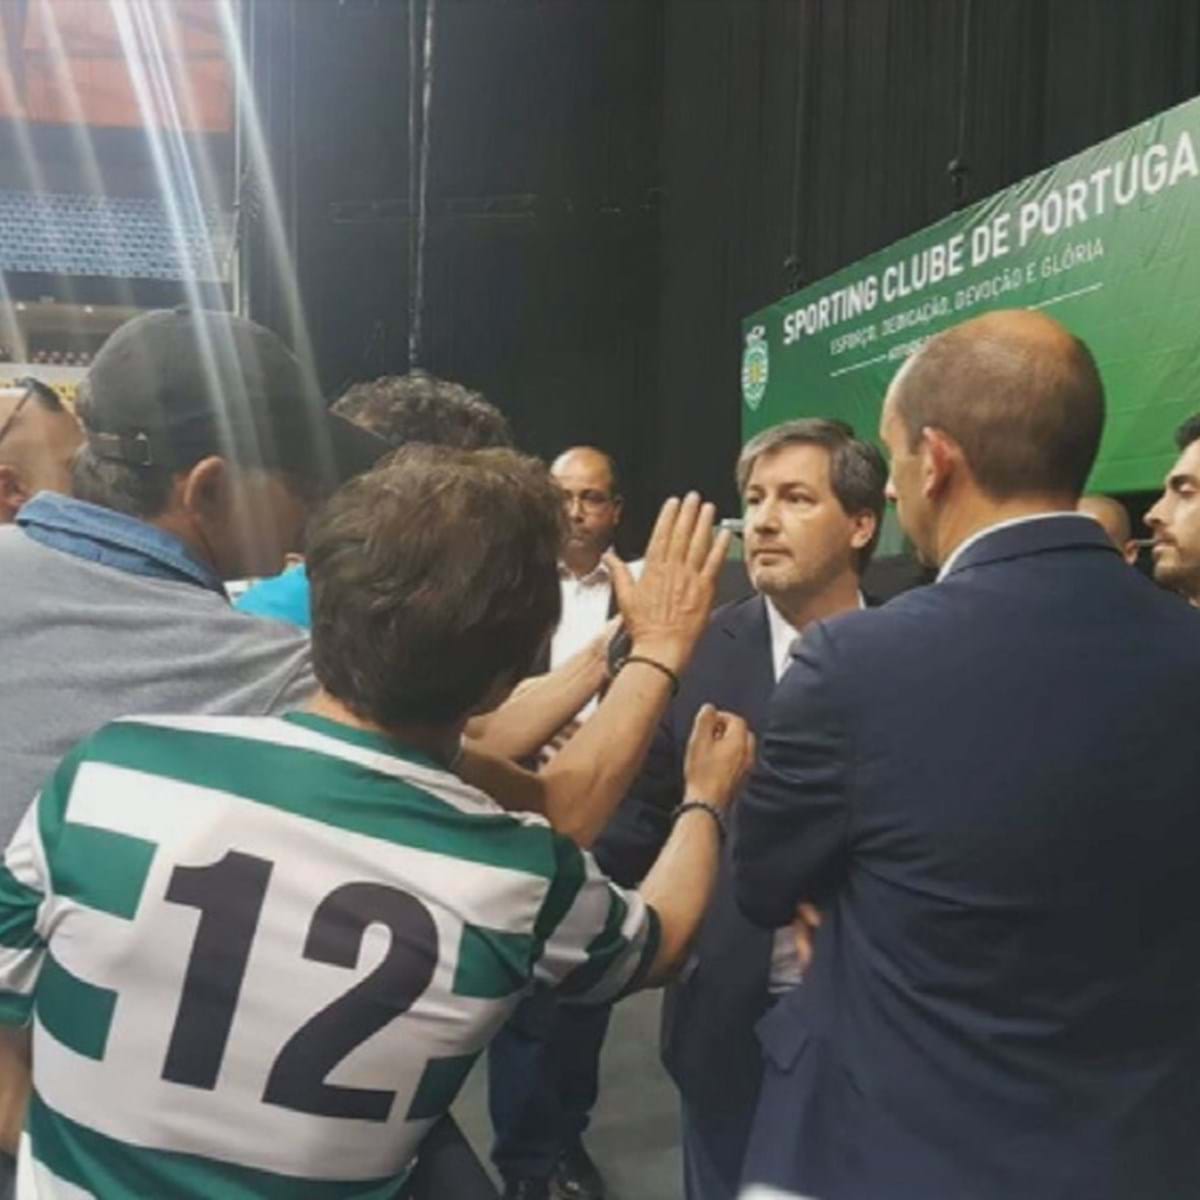 Adeptos do Celta de Vigo querem que o clube se mude para a liga portuguesa